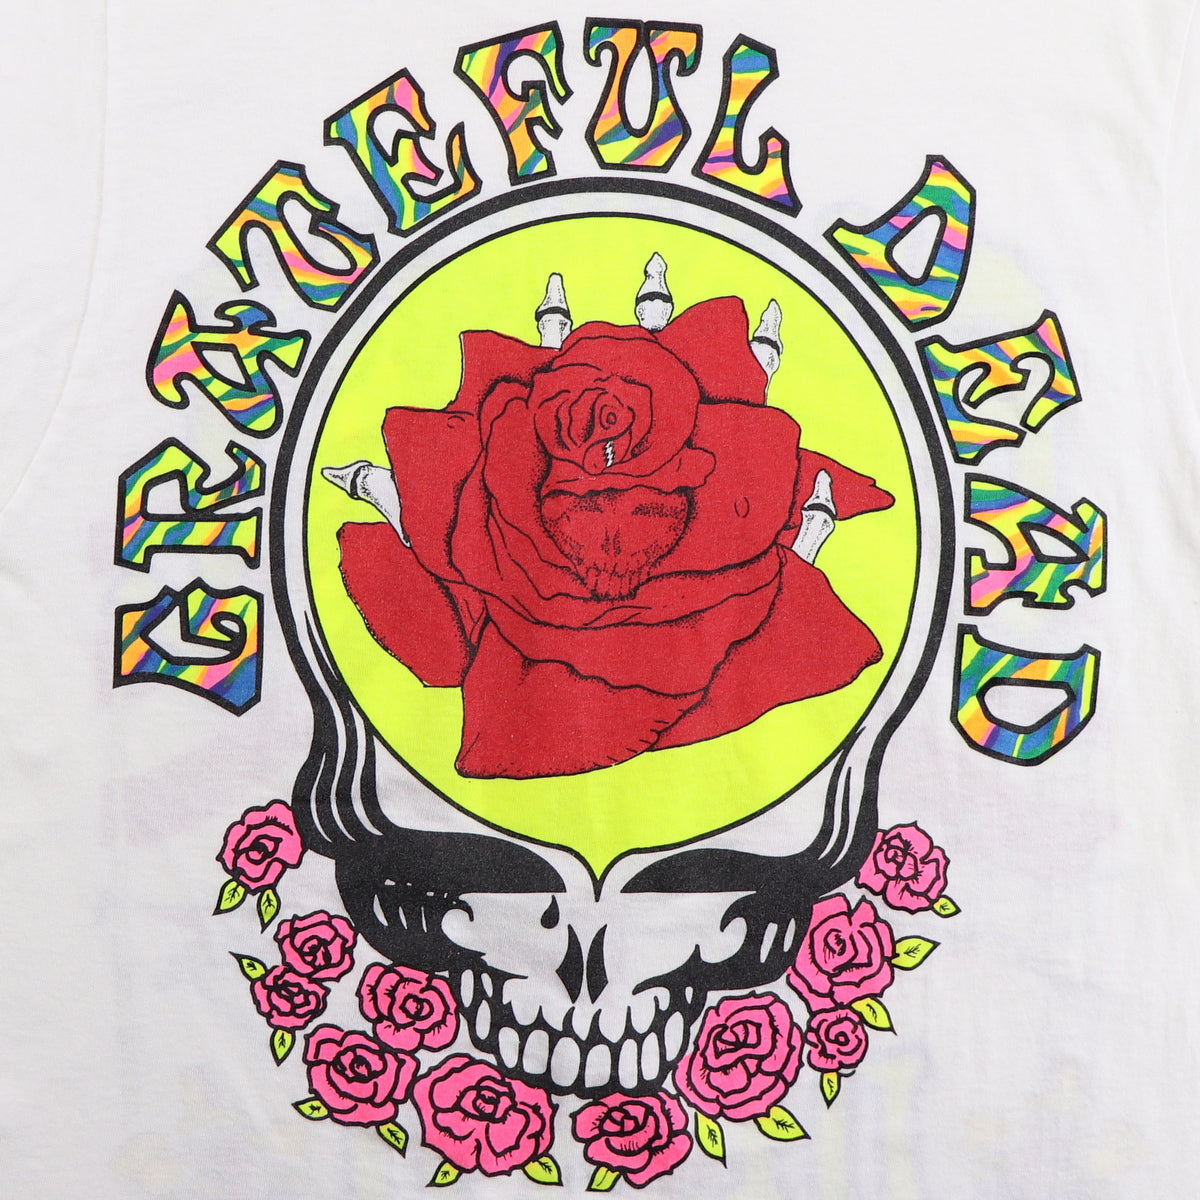 1991 Grateful Dead Summer Tour Shirt